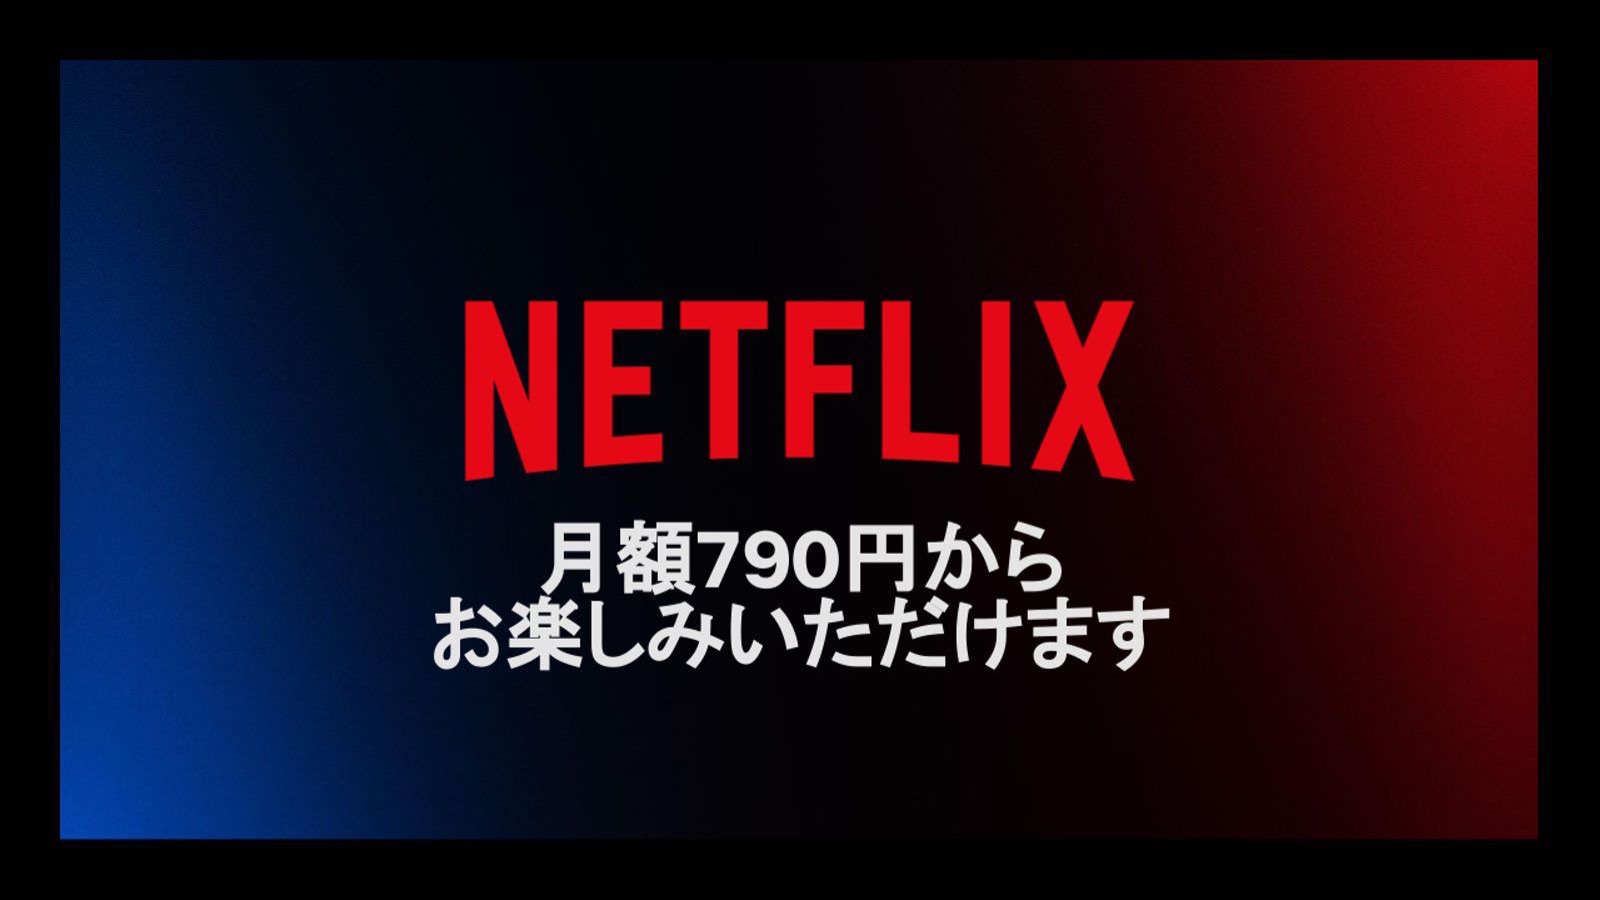 Netflix from 790yen 01